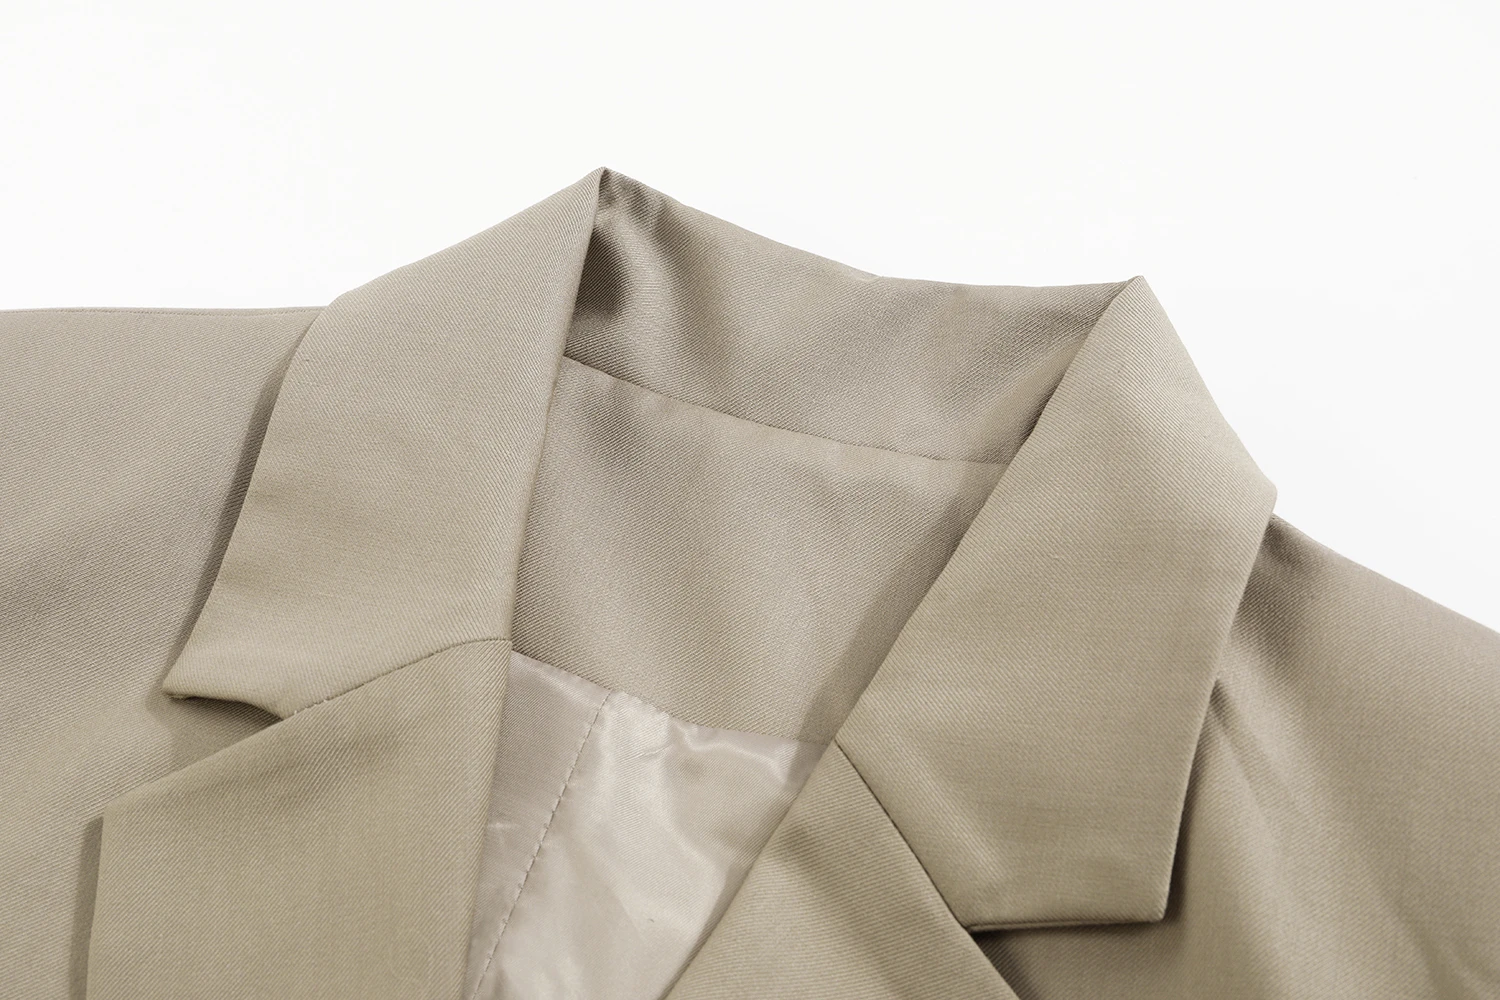 [EAM] Женский облегающий блейзер цвета хаки с завышенной талией, новинка, свободный пиджак с отворотом и длинным рукавом, модная куртка весна-осень, 1B484